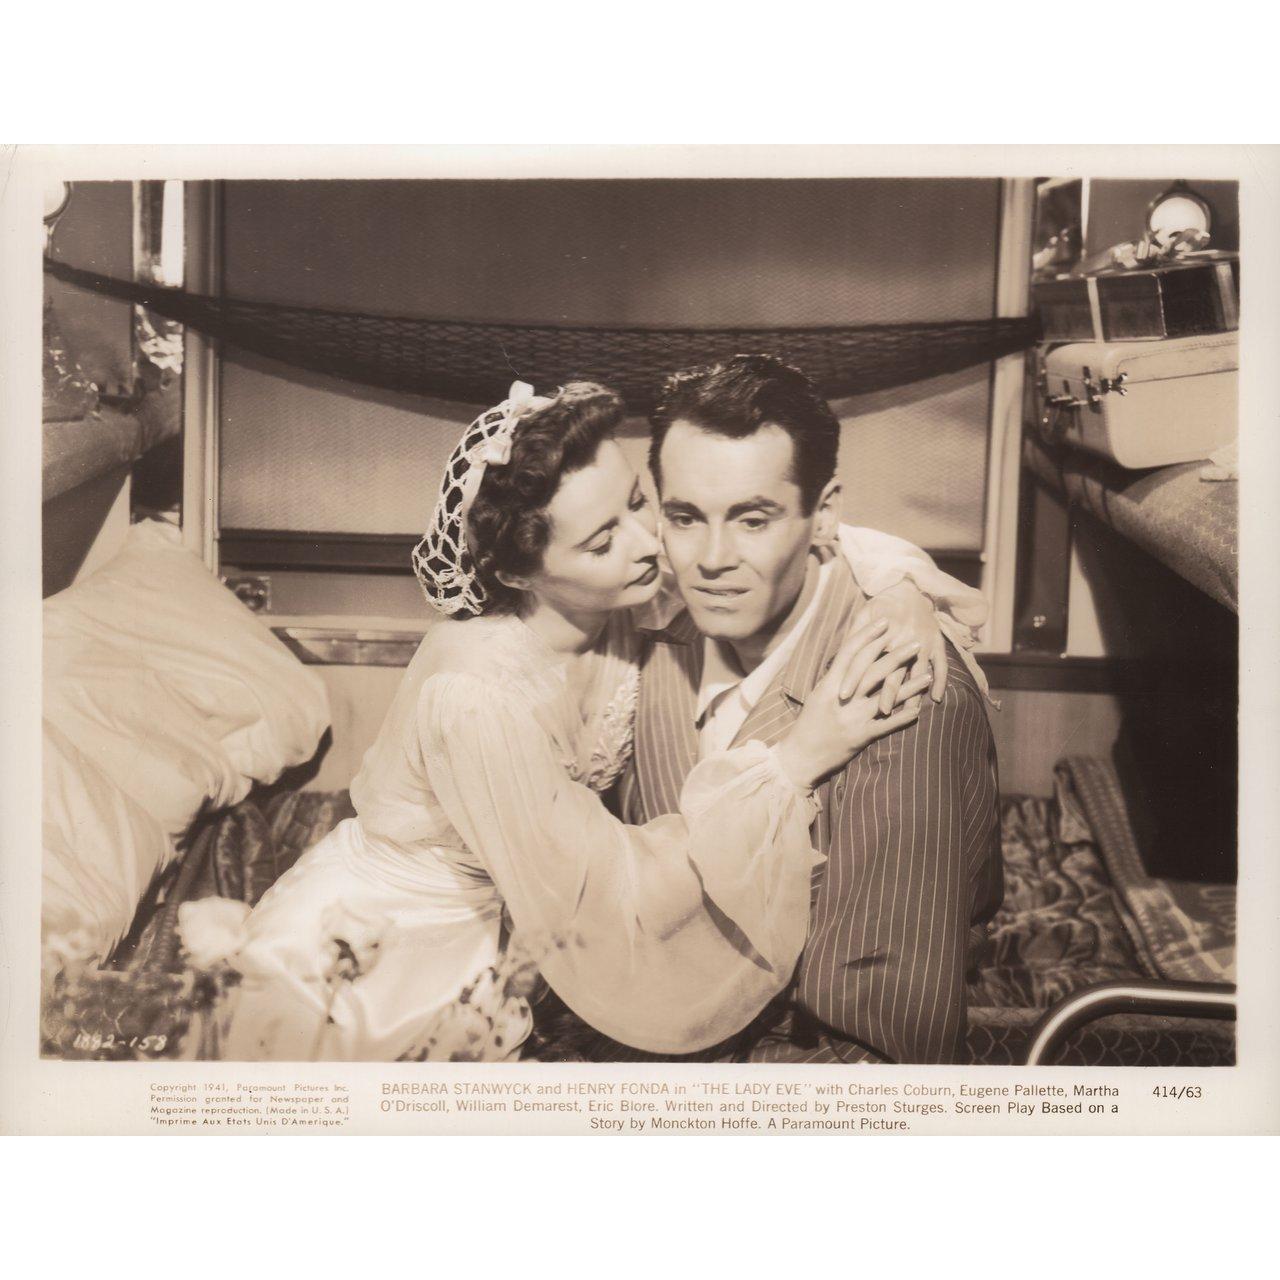 Original US-Silbergelatinefoto von 1941 für den Film The Lady Eve unter der Regie von Preston Sturges mit Barbara Stanwyck / Henry Fonda / Charles Coburn / Eugene Pallette. Sehr guter Zustand. Bitte beachten Sie: Die Größe ist in Zoll angegeben und